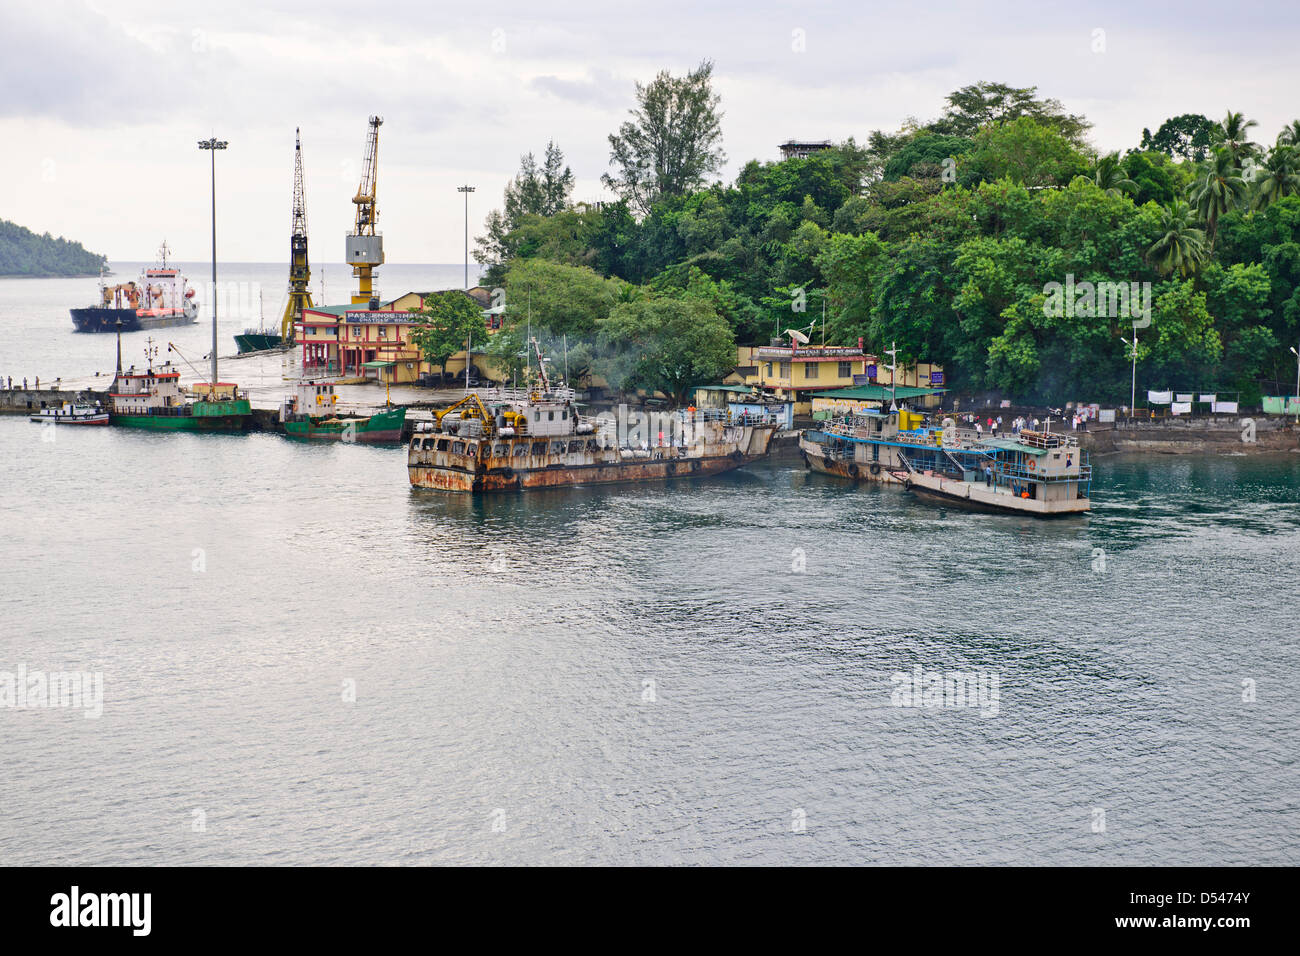 Entrée de Port Blair,port délabré de banlieue sur les transbordeurs, Port, les navires, à l'ancre, les navires de la marine indienne,Îles d'Andaman Banque D'Images